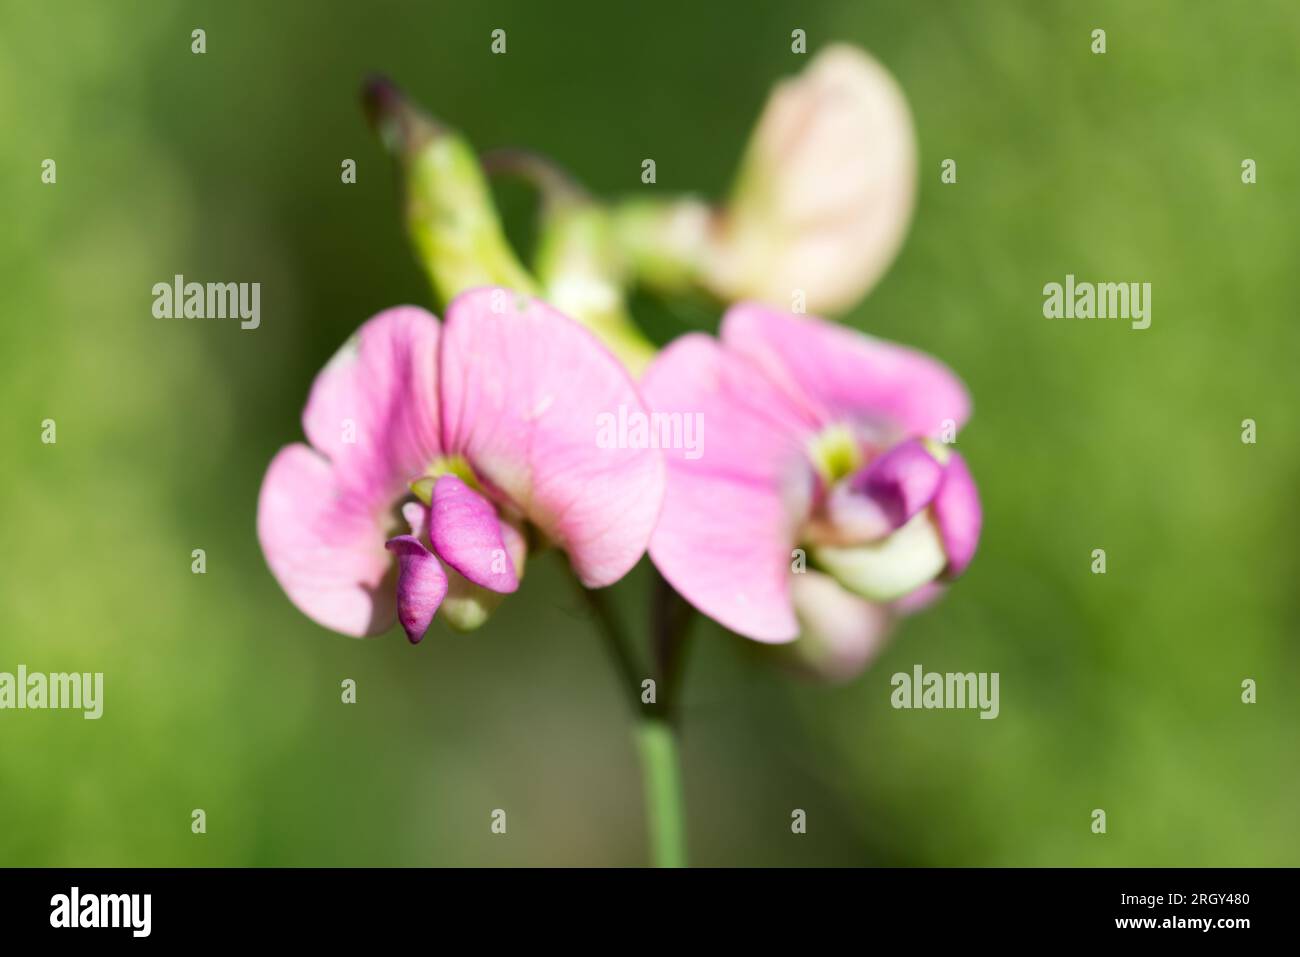 Lathyrus sylvestris, flat pea summer flowers  closeup selective focus Stock Photo